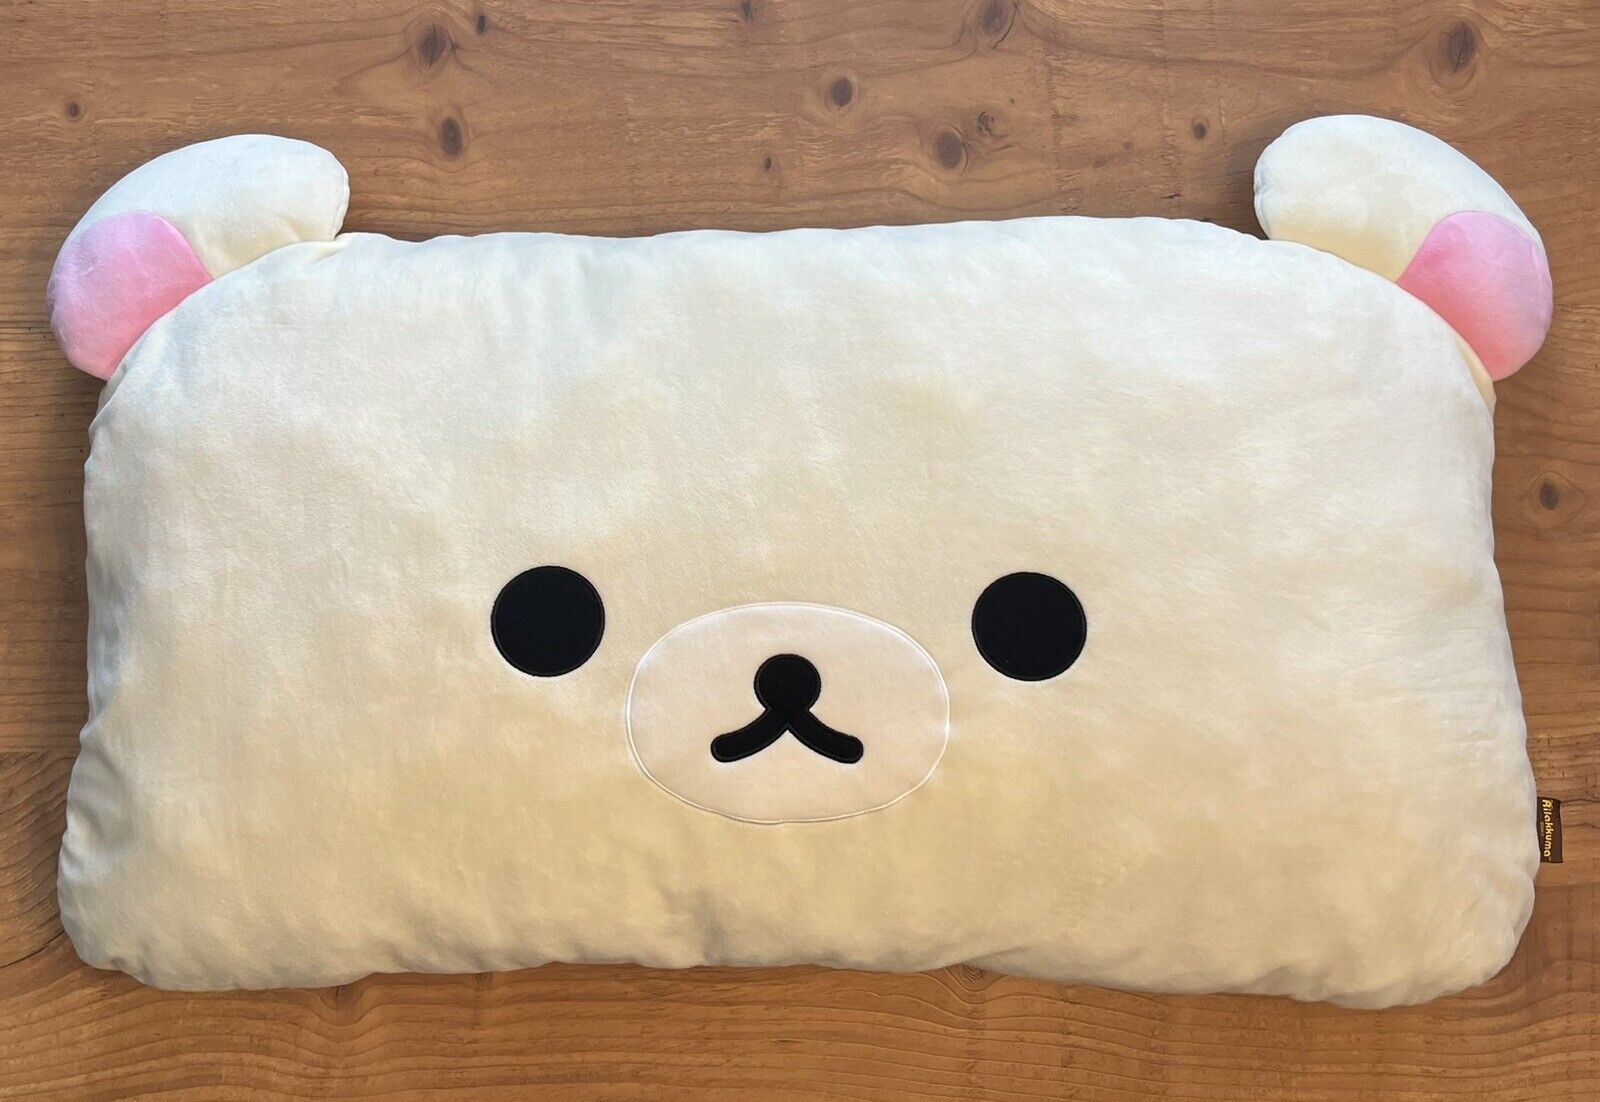 San-X Rilakkuma Korilakkuma Face Pillow Plush Extra Big Super Soft Collectible